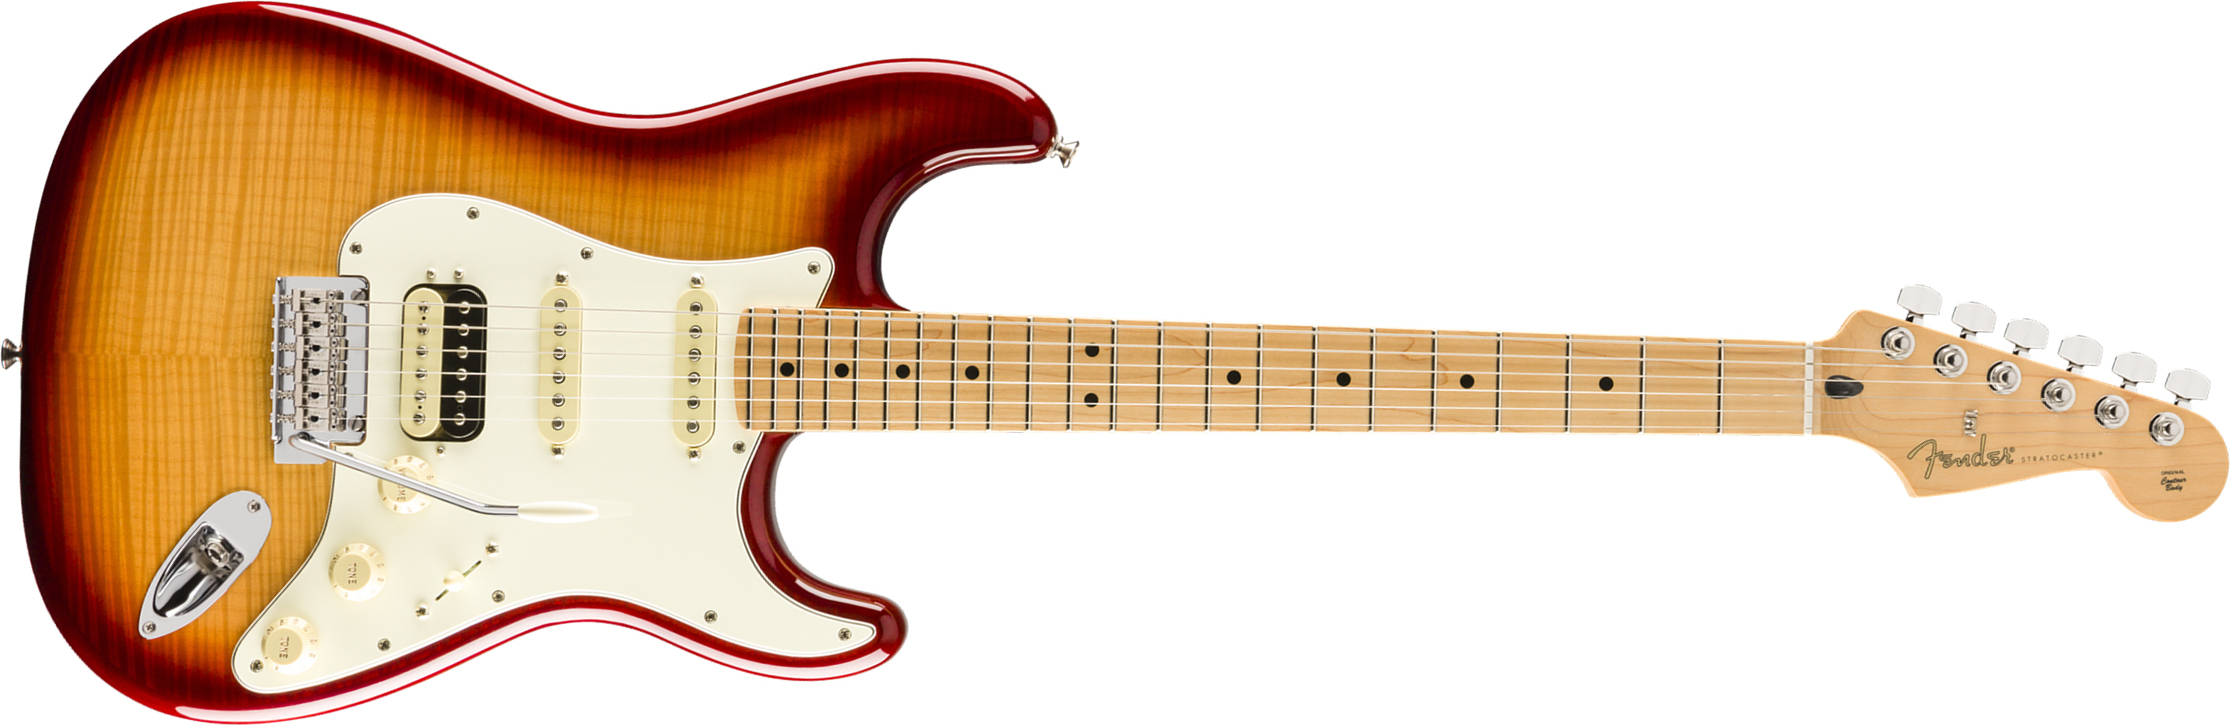 Fender Strat Player Hss Plus Top Fsr Ltd 2019 Mex Mn - Sienna Sunburst - Guitare Électrique Forme Str - Main picture